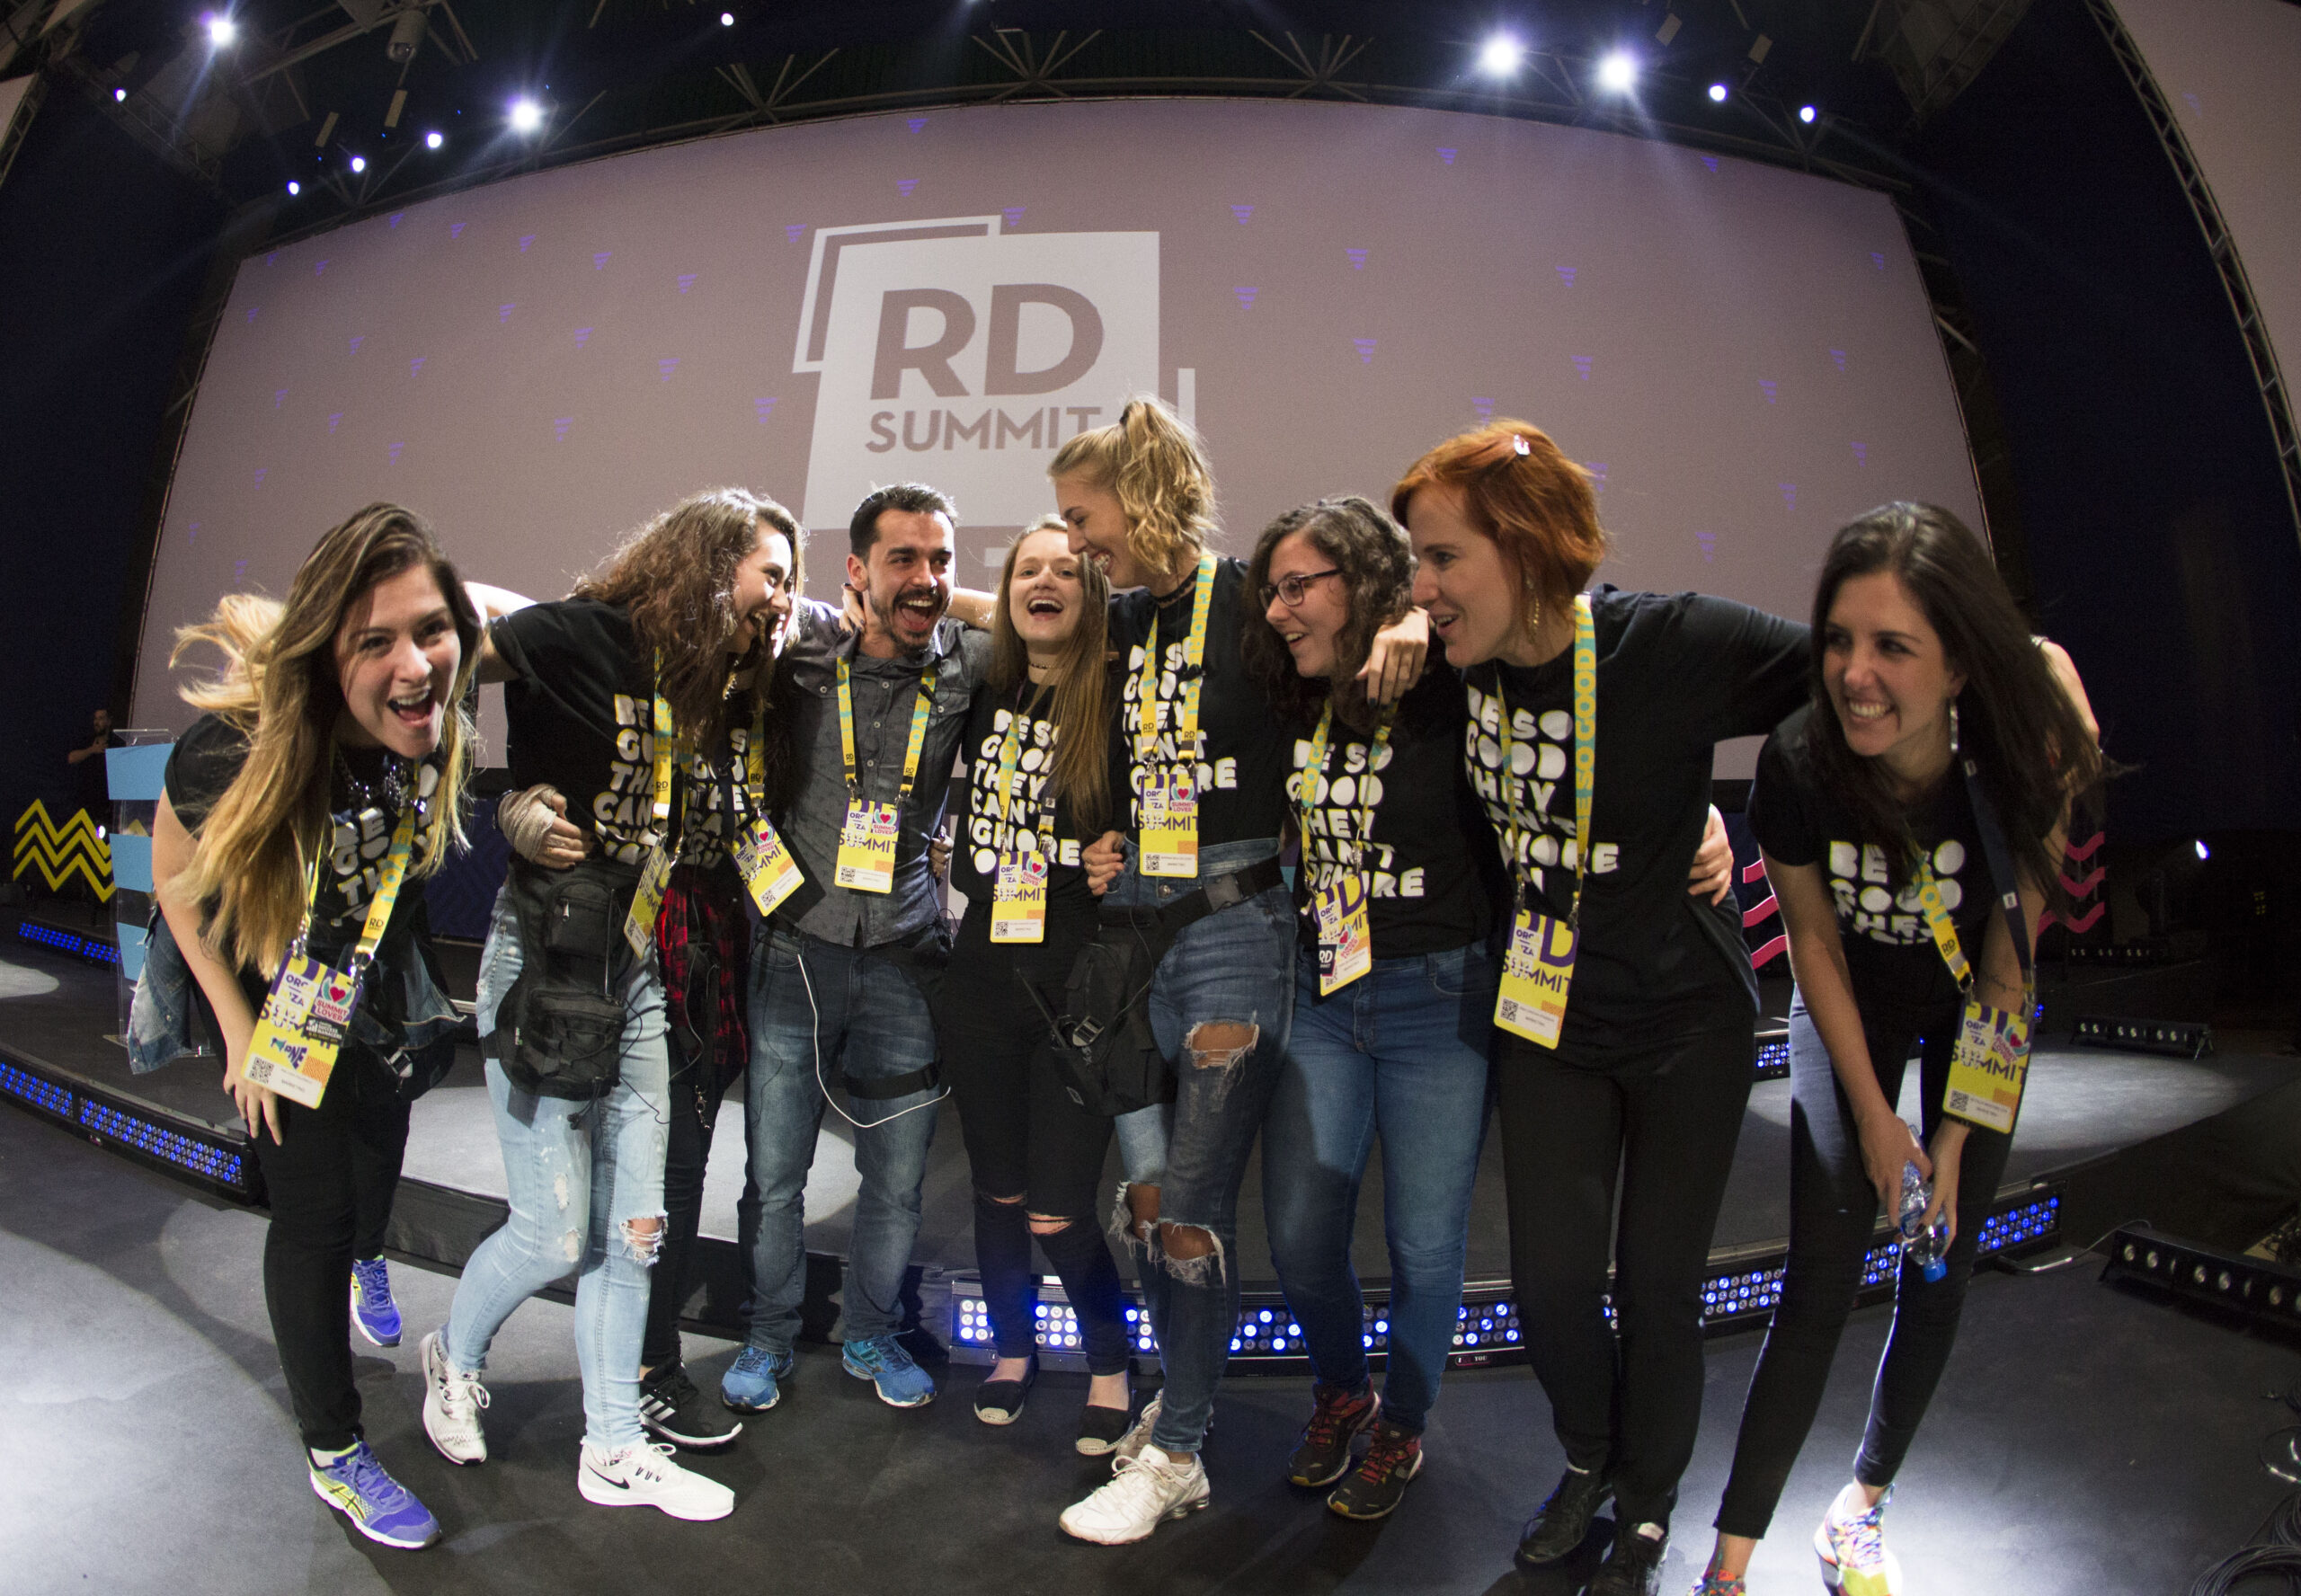 Os 5 segredos surpreendentes de marketing do RD Summit